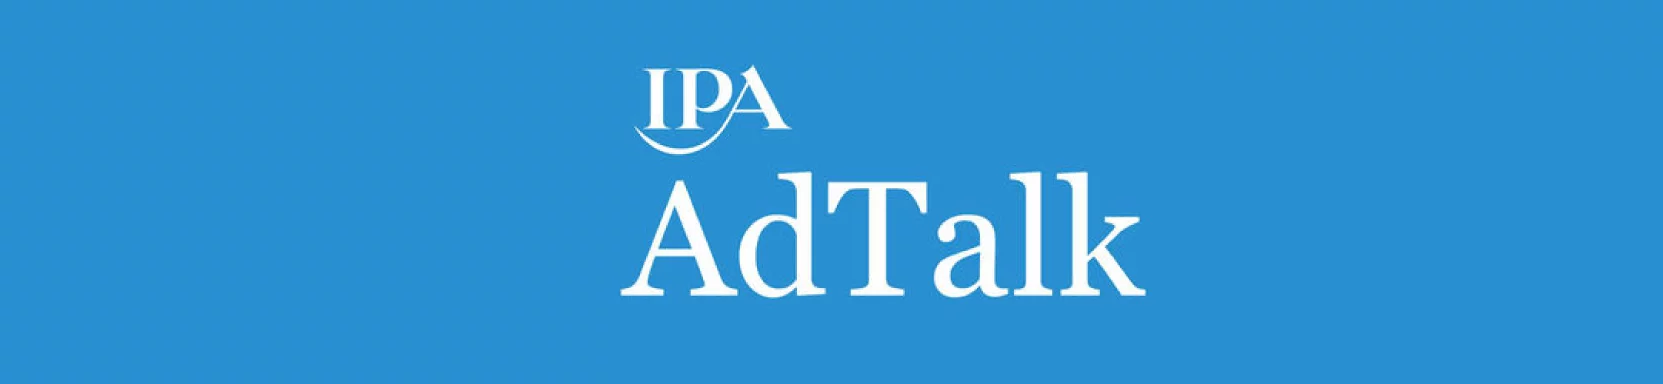 IPA AdTalk Podcast